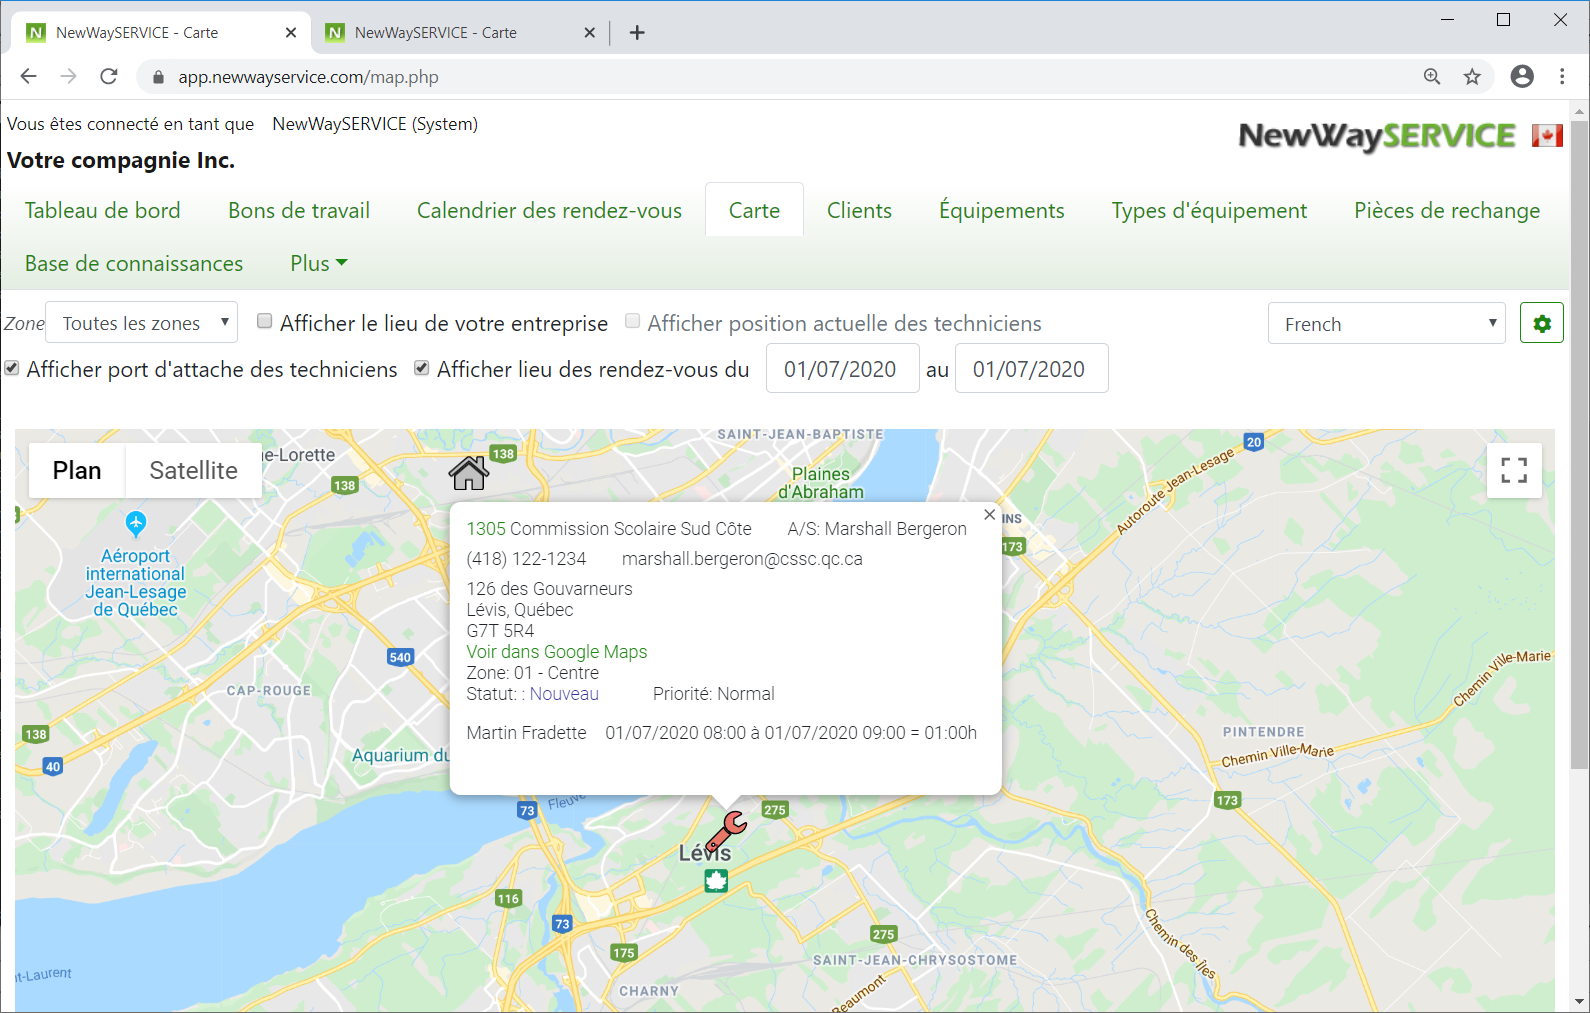 Logiciel Service Client - Capture d'écran - Carte Google Maps®